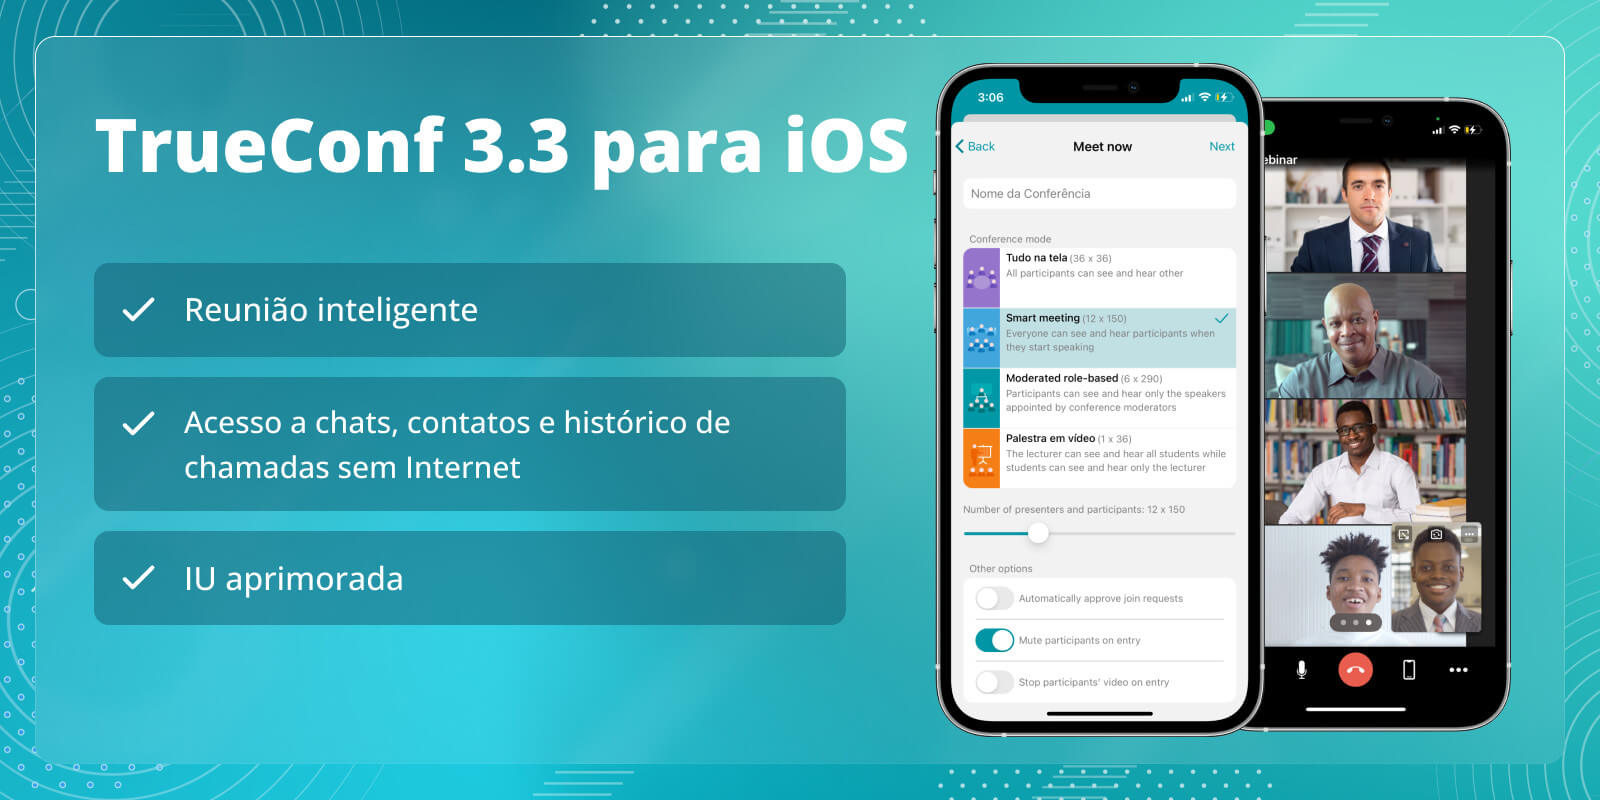 TrueConf 3.3 para iOS: nova interface do usuário, modo de reunião inteligente, acesso offline a chats, contatos e histórico de chamadas 1